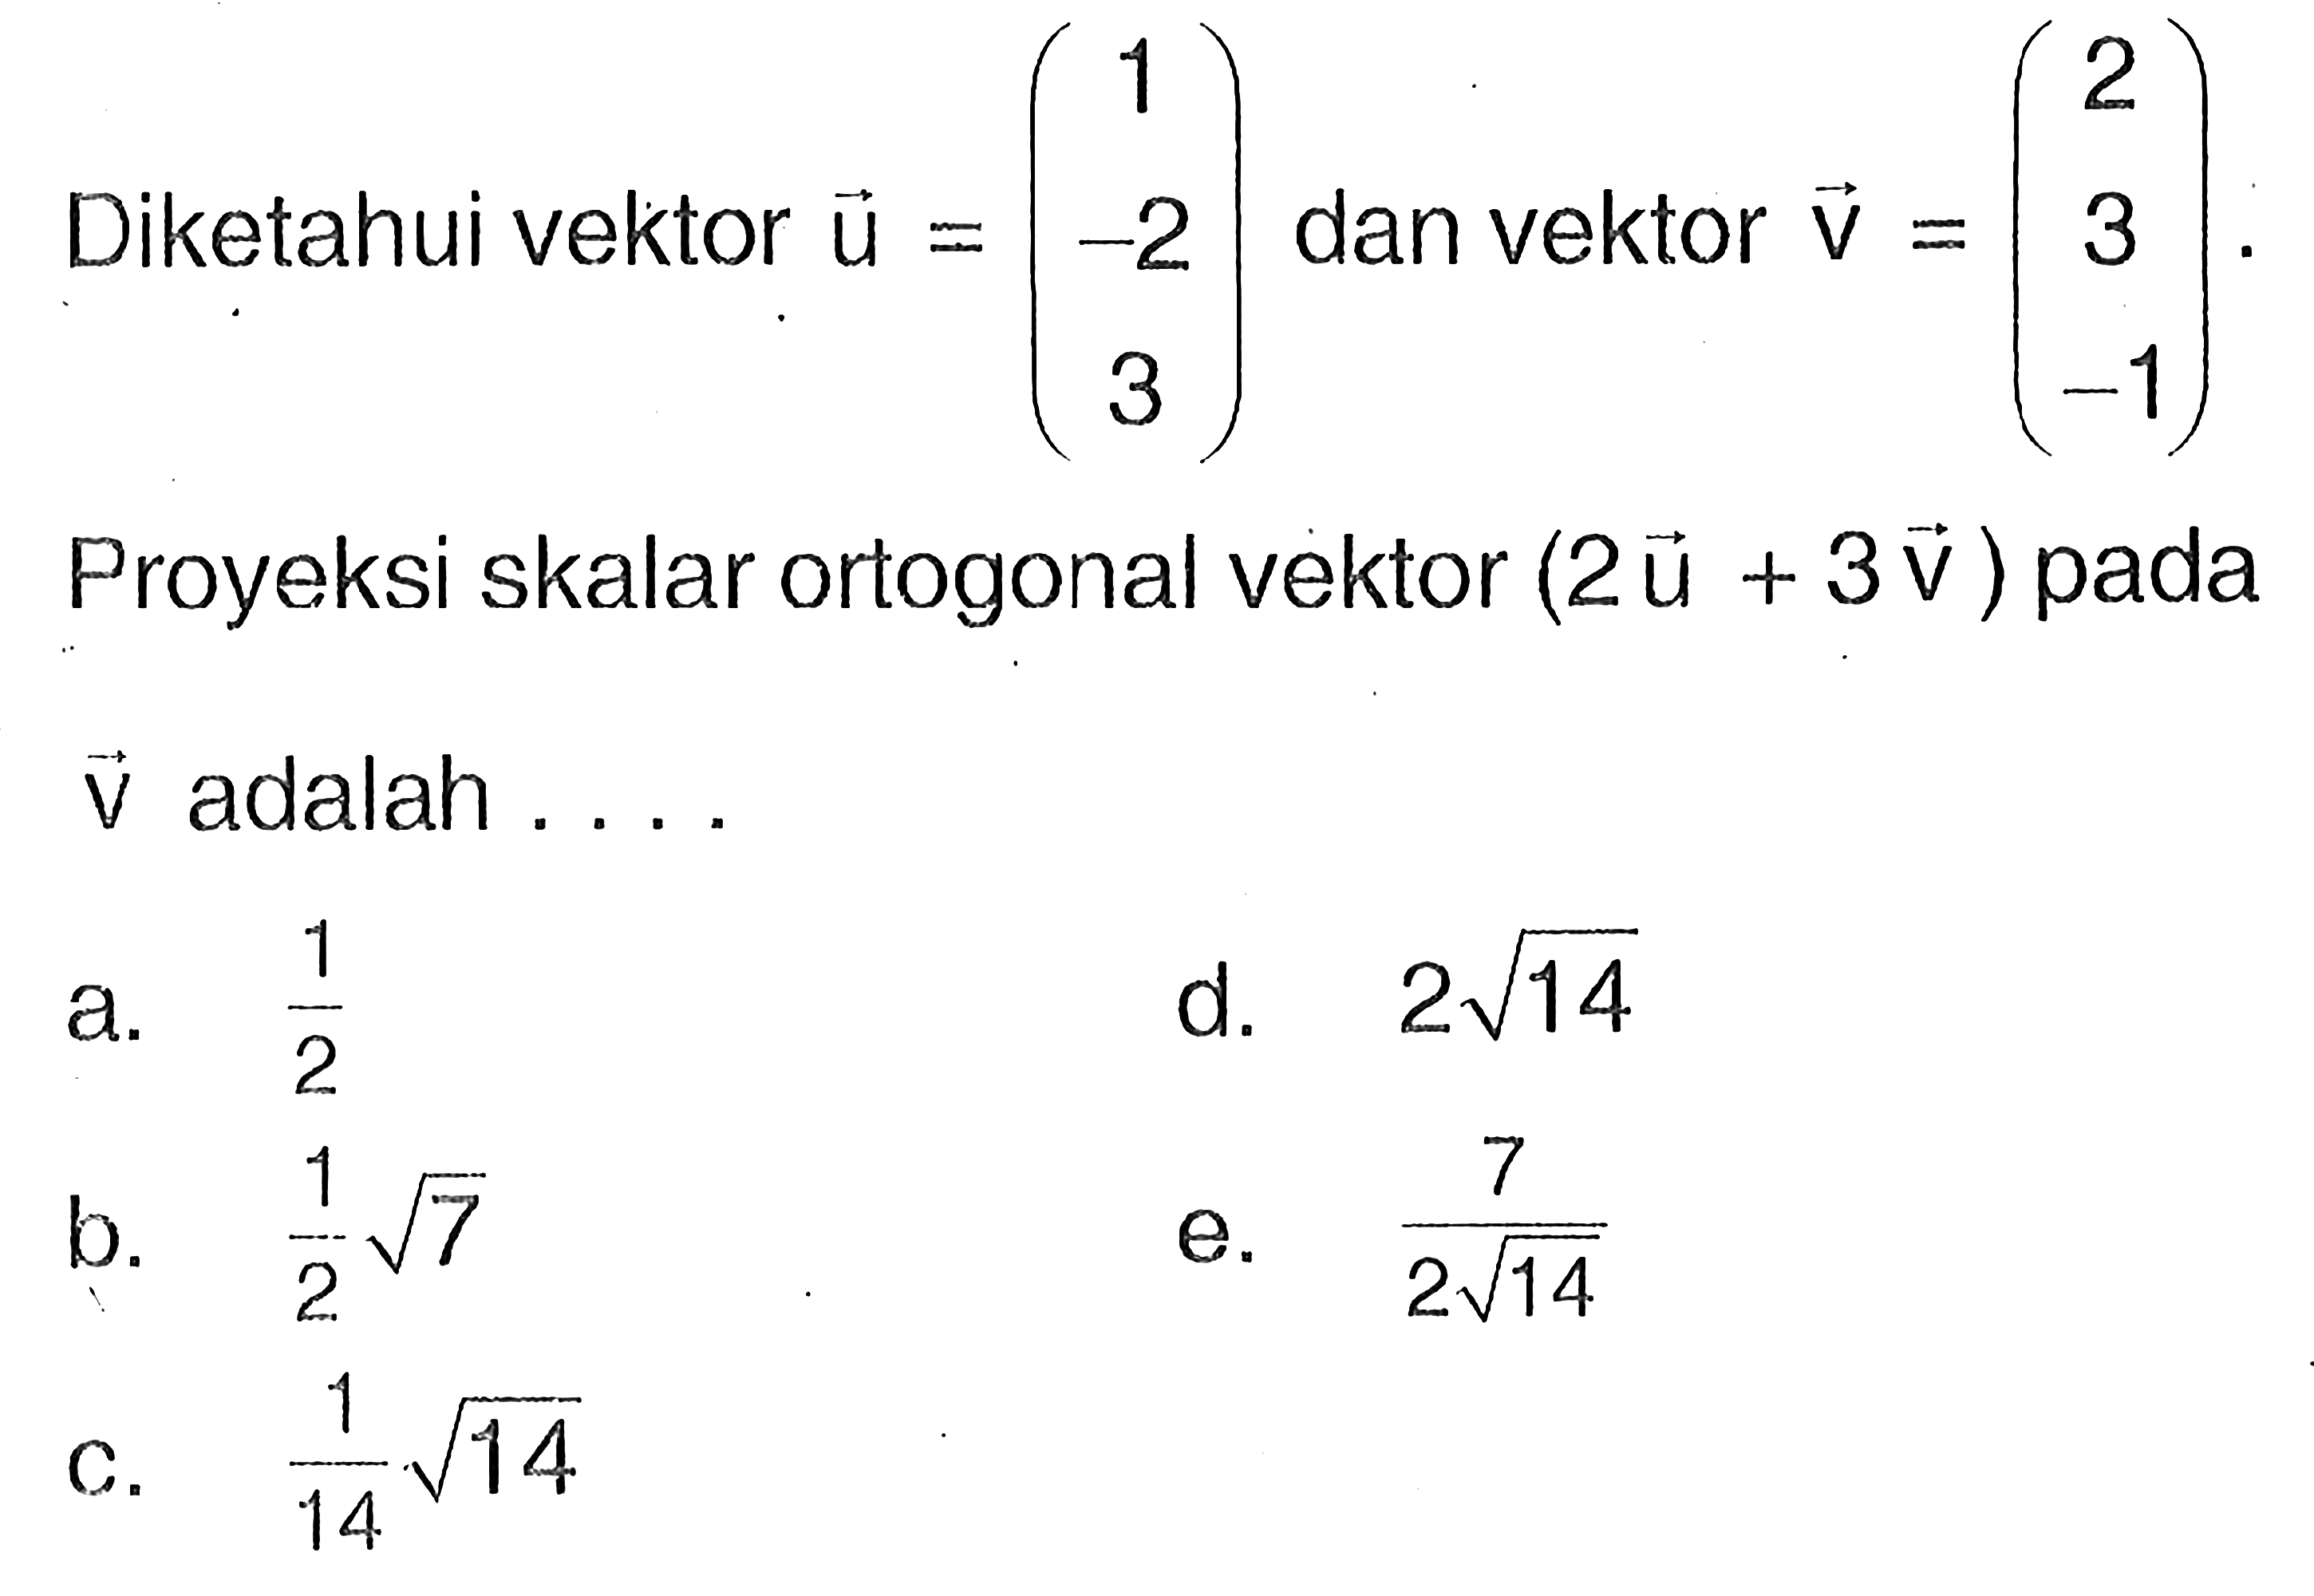 Diketahui vektor  u=(1  -2  3)  dan vektor  v=(2  3  -1)  Proyeksi skalar ortogonal vektor  (2 vektor u+3 vektor v)  pada vektor v adalah .... 